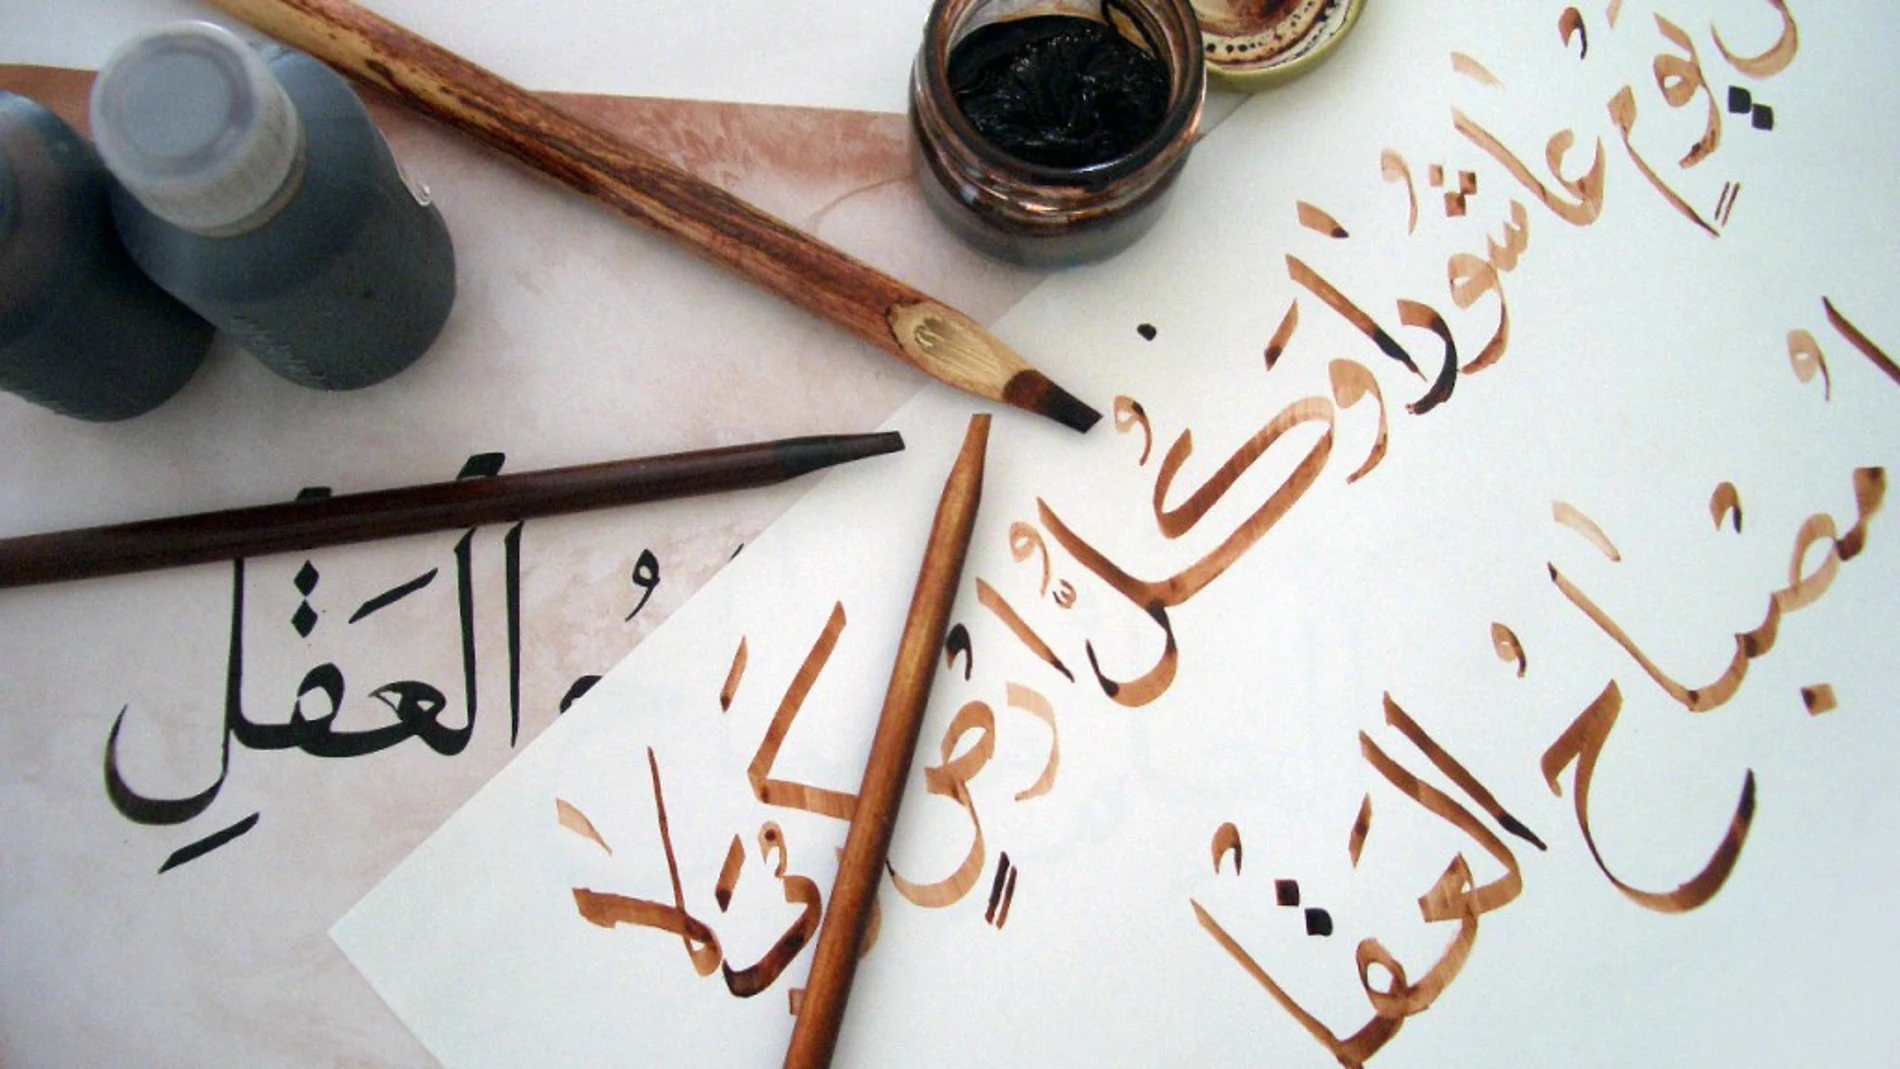 Obra de un estudiante de caligrafía árabe, utilizando bolígrafos de bambú y tinta marrón, trazando sobre la obra del profesor con tinta negra.